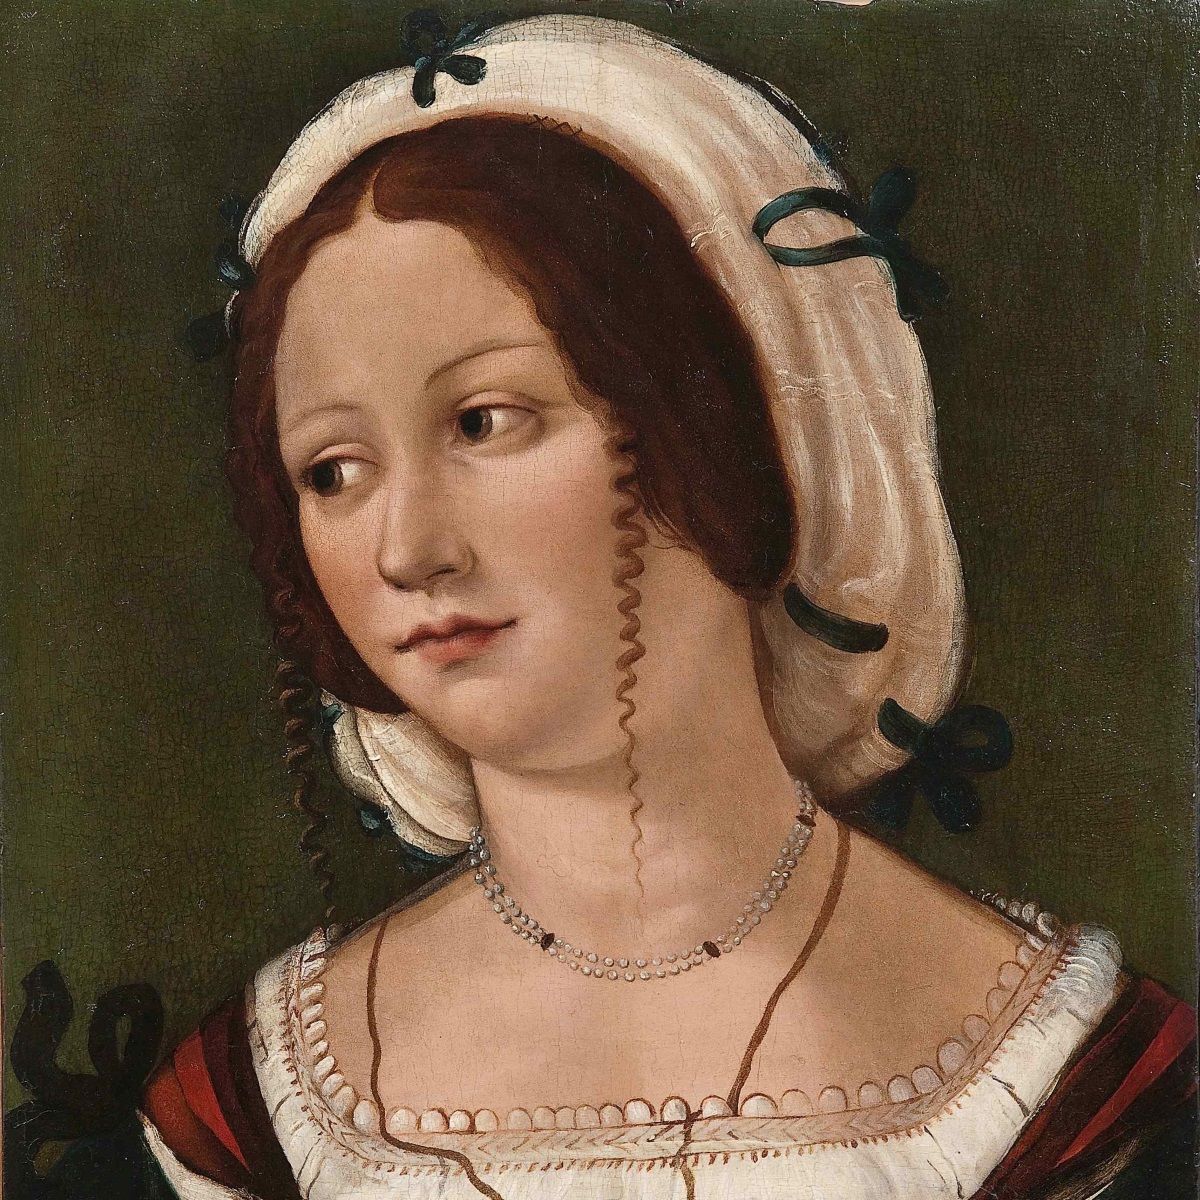 Nie zachował się żaden obraz przedstawiający Katarzynę Telniczankę. Na ilustracji portret anonimowej kobiety z około 1510 roku.